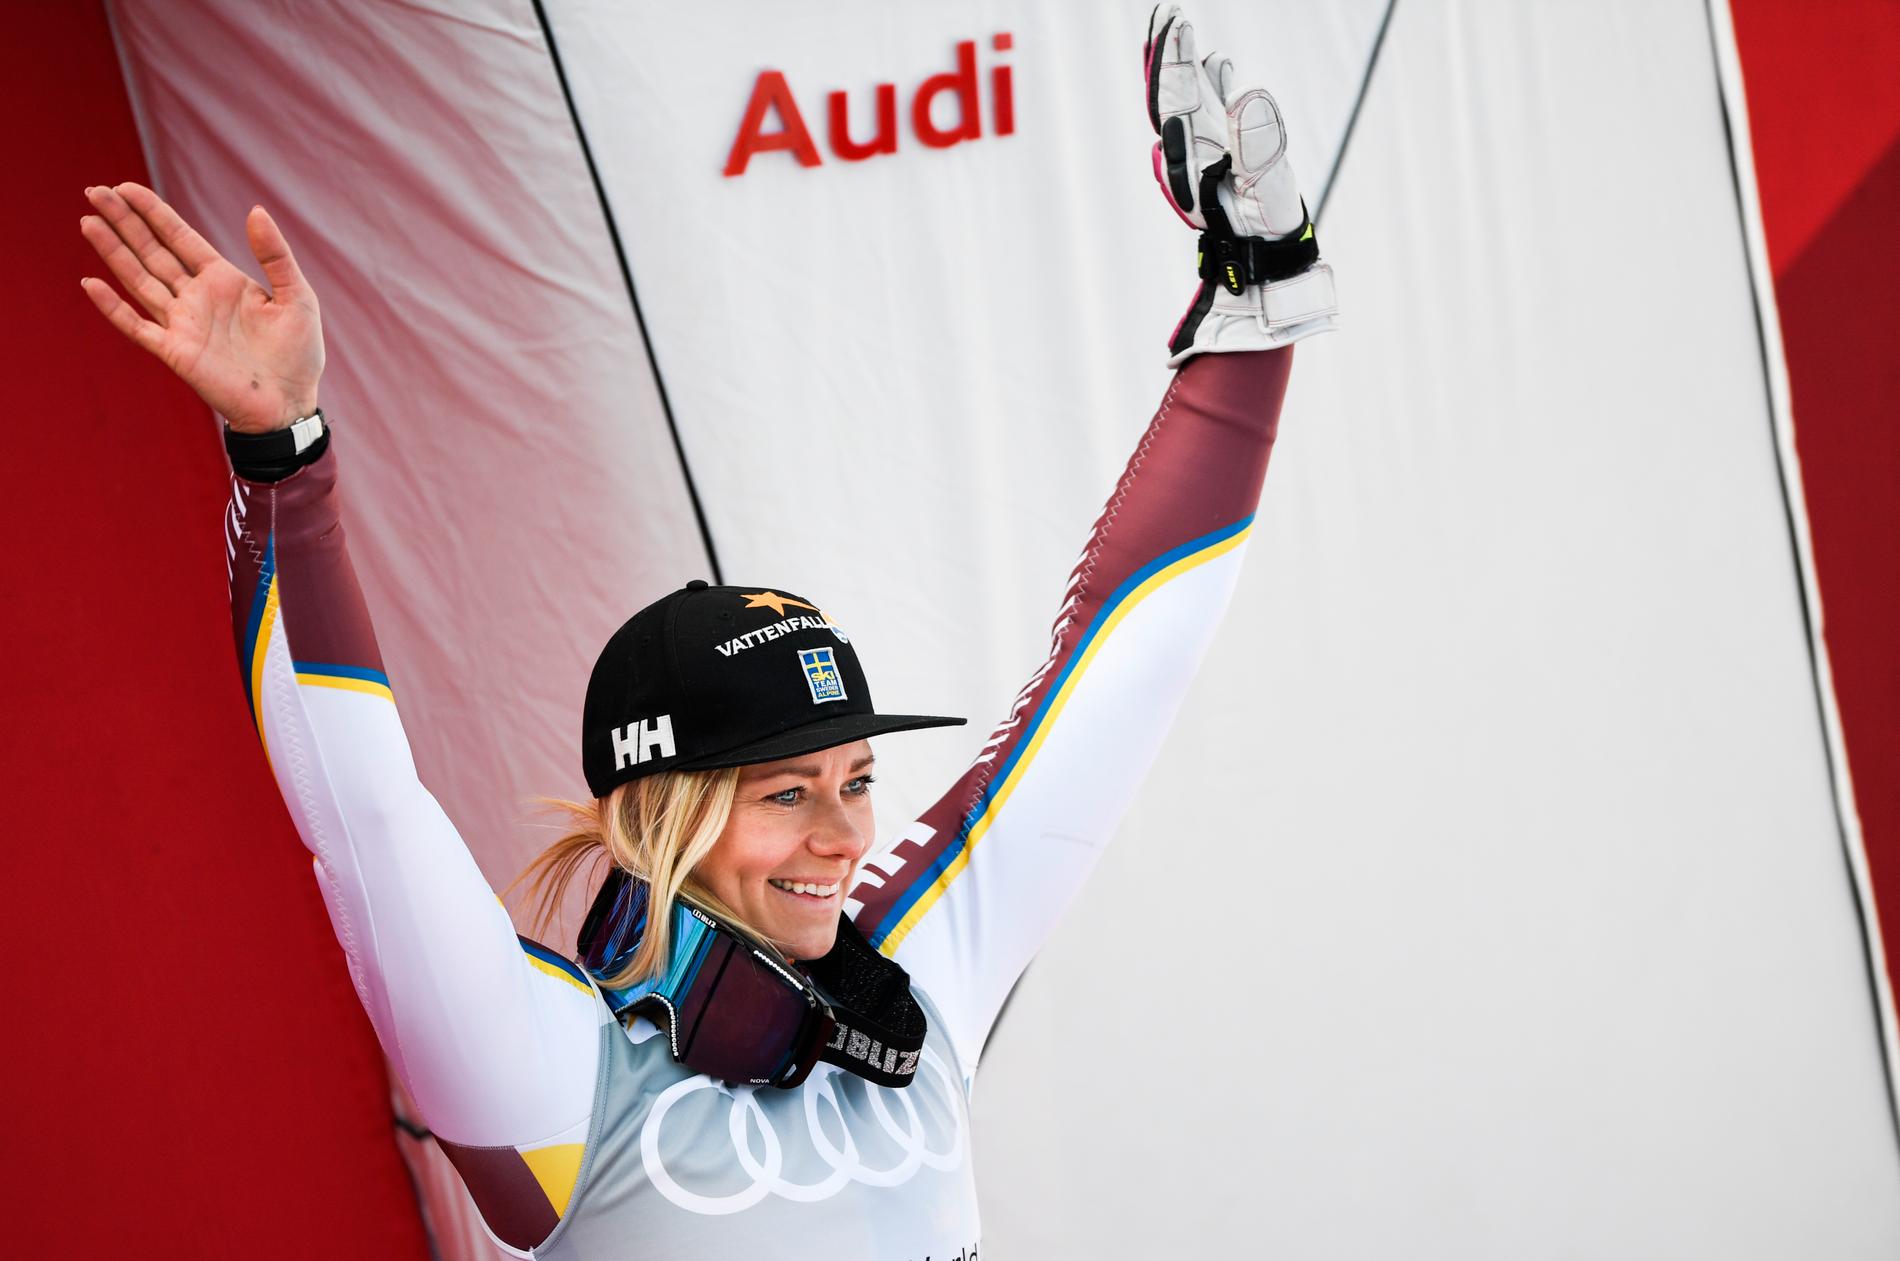 Frida Hansdotter inledde sin karriär med att köra allt. I dag är hon en av världens främsta slalomåkare, och kom trea i årets slalomvärldscup efter finalen i Åre.